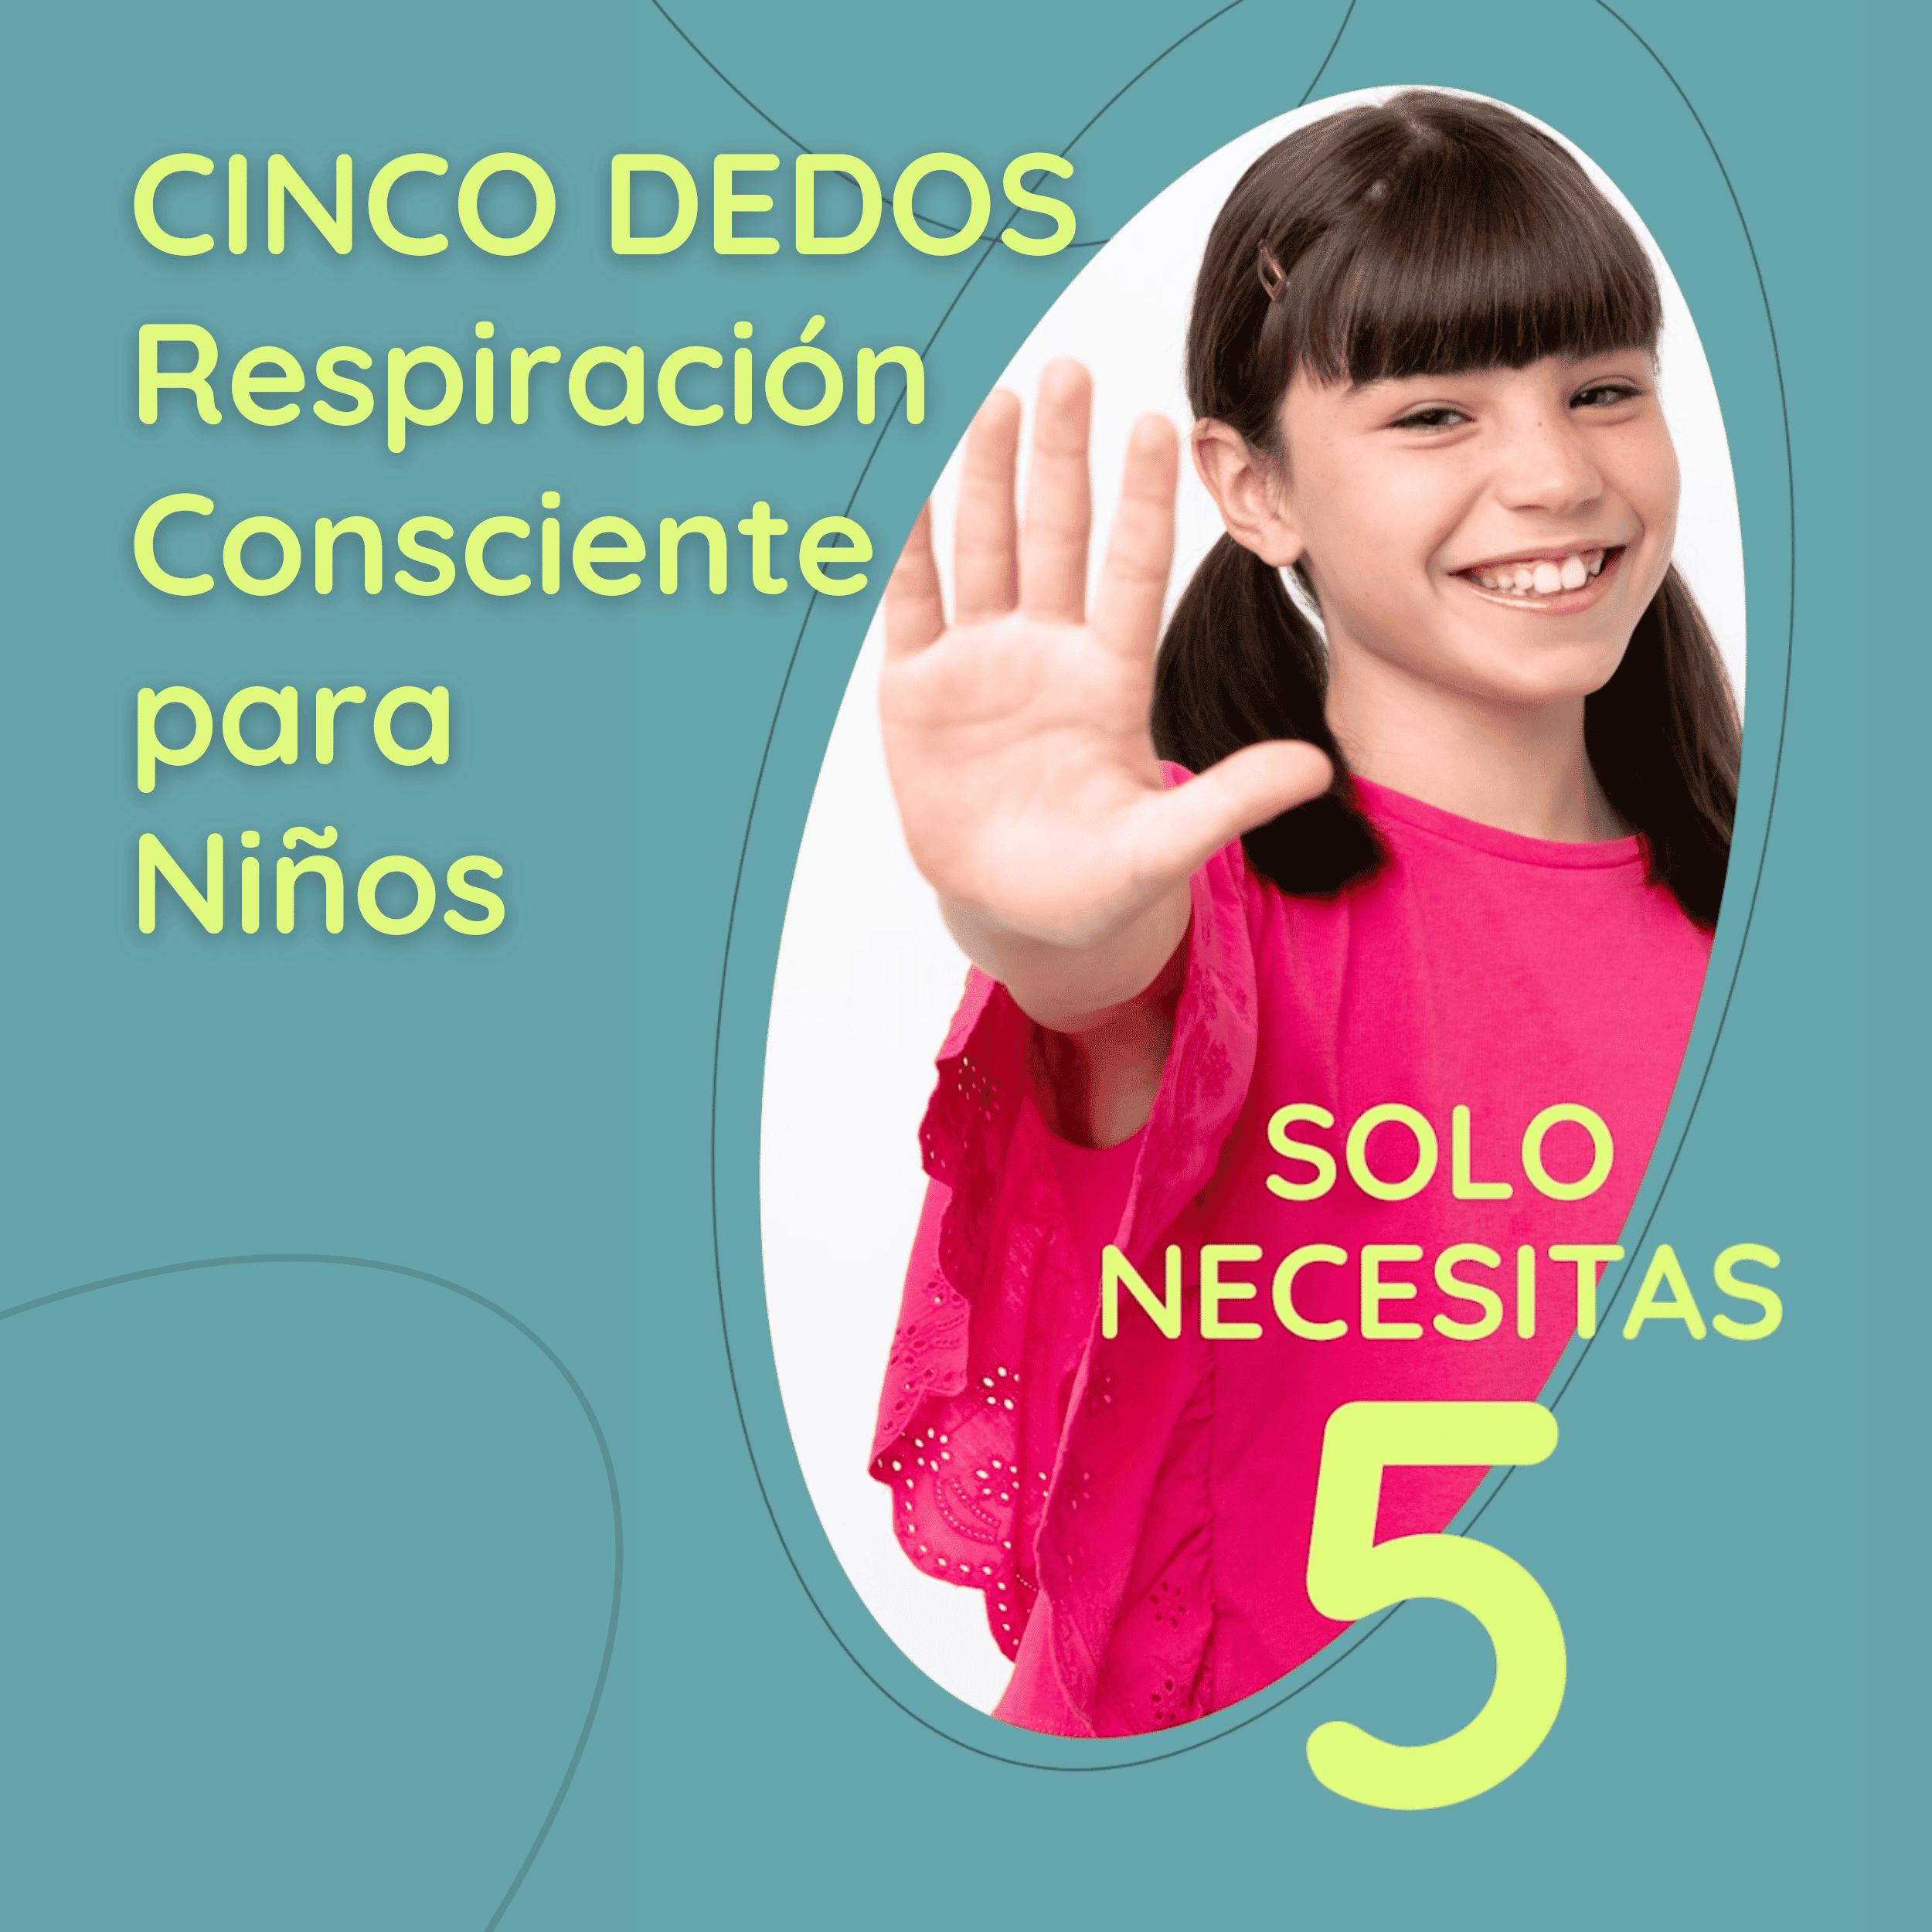 Solo necesitas 5 - Respiración Consciente de los Cinco Dedos, para Niños